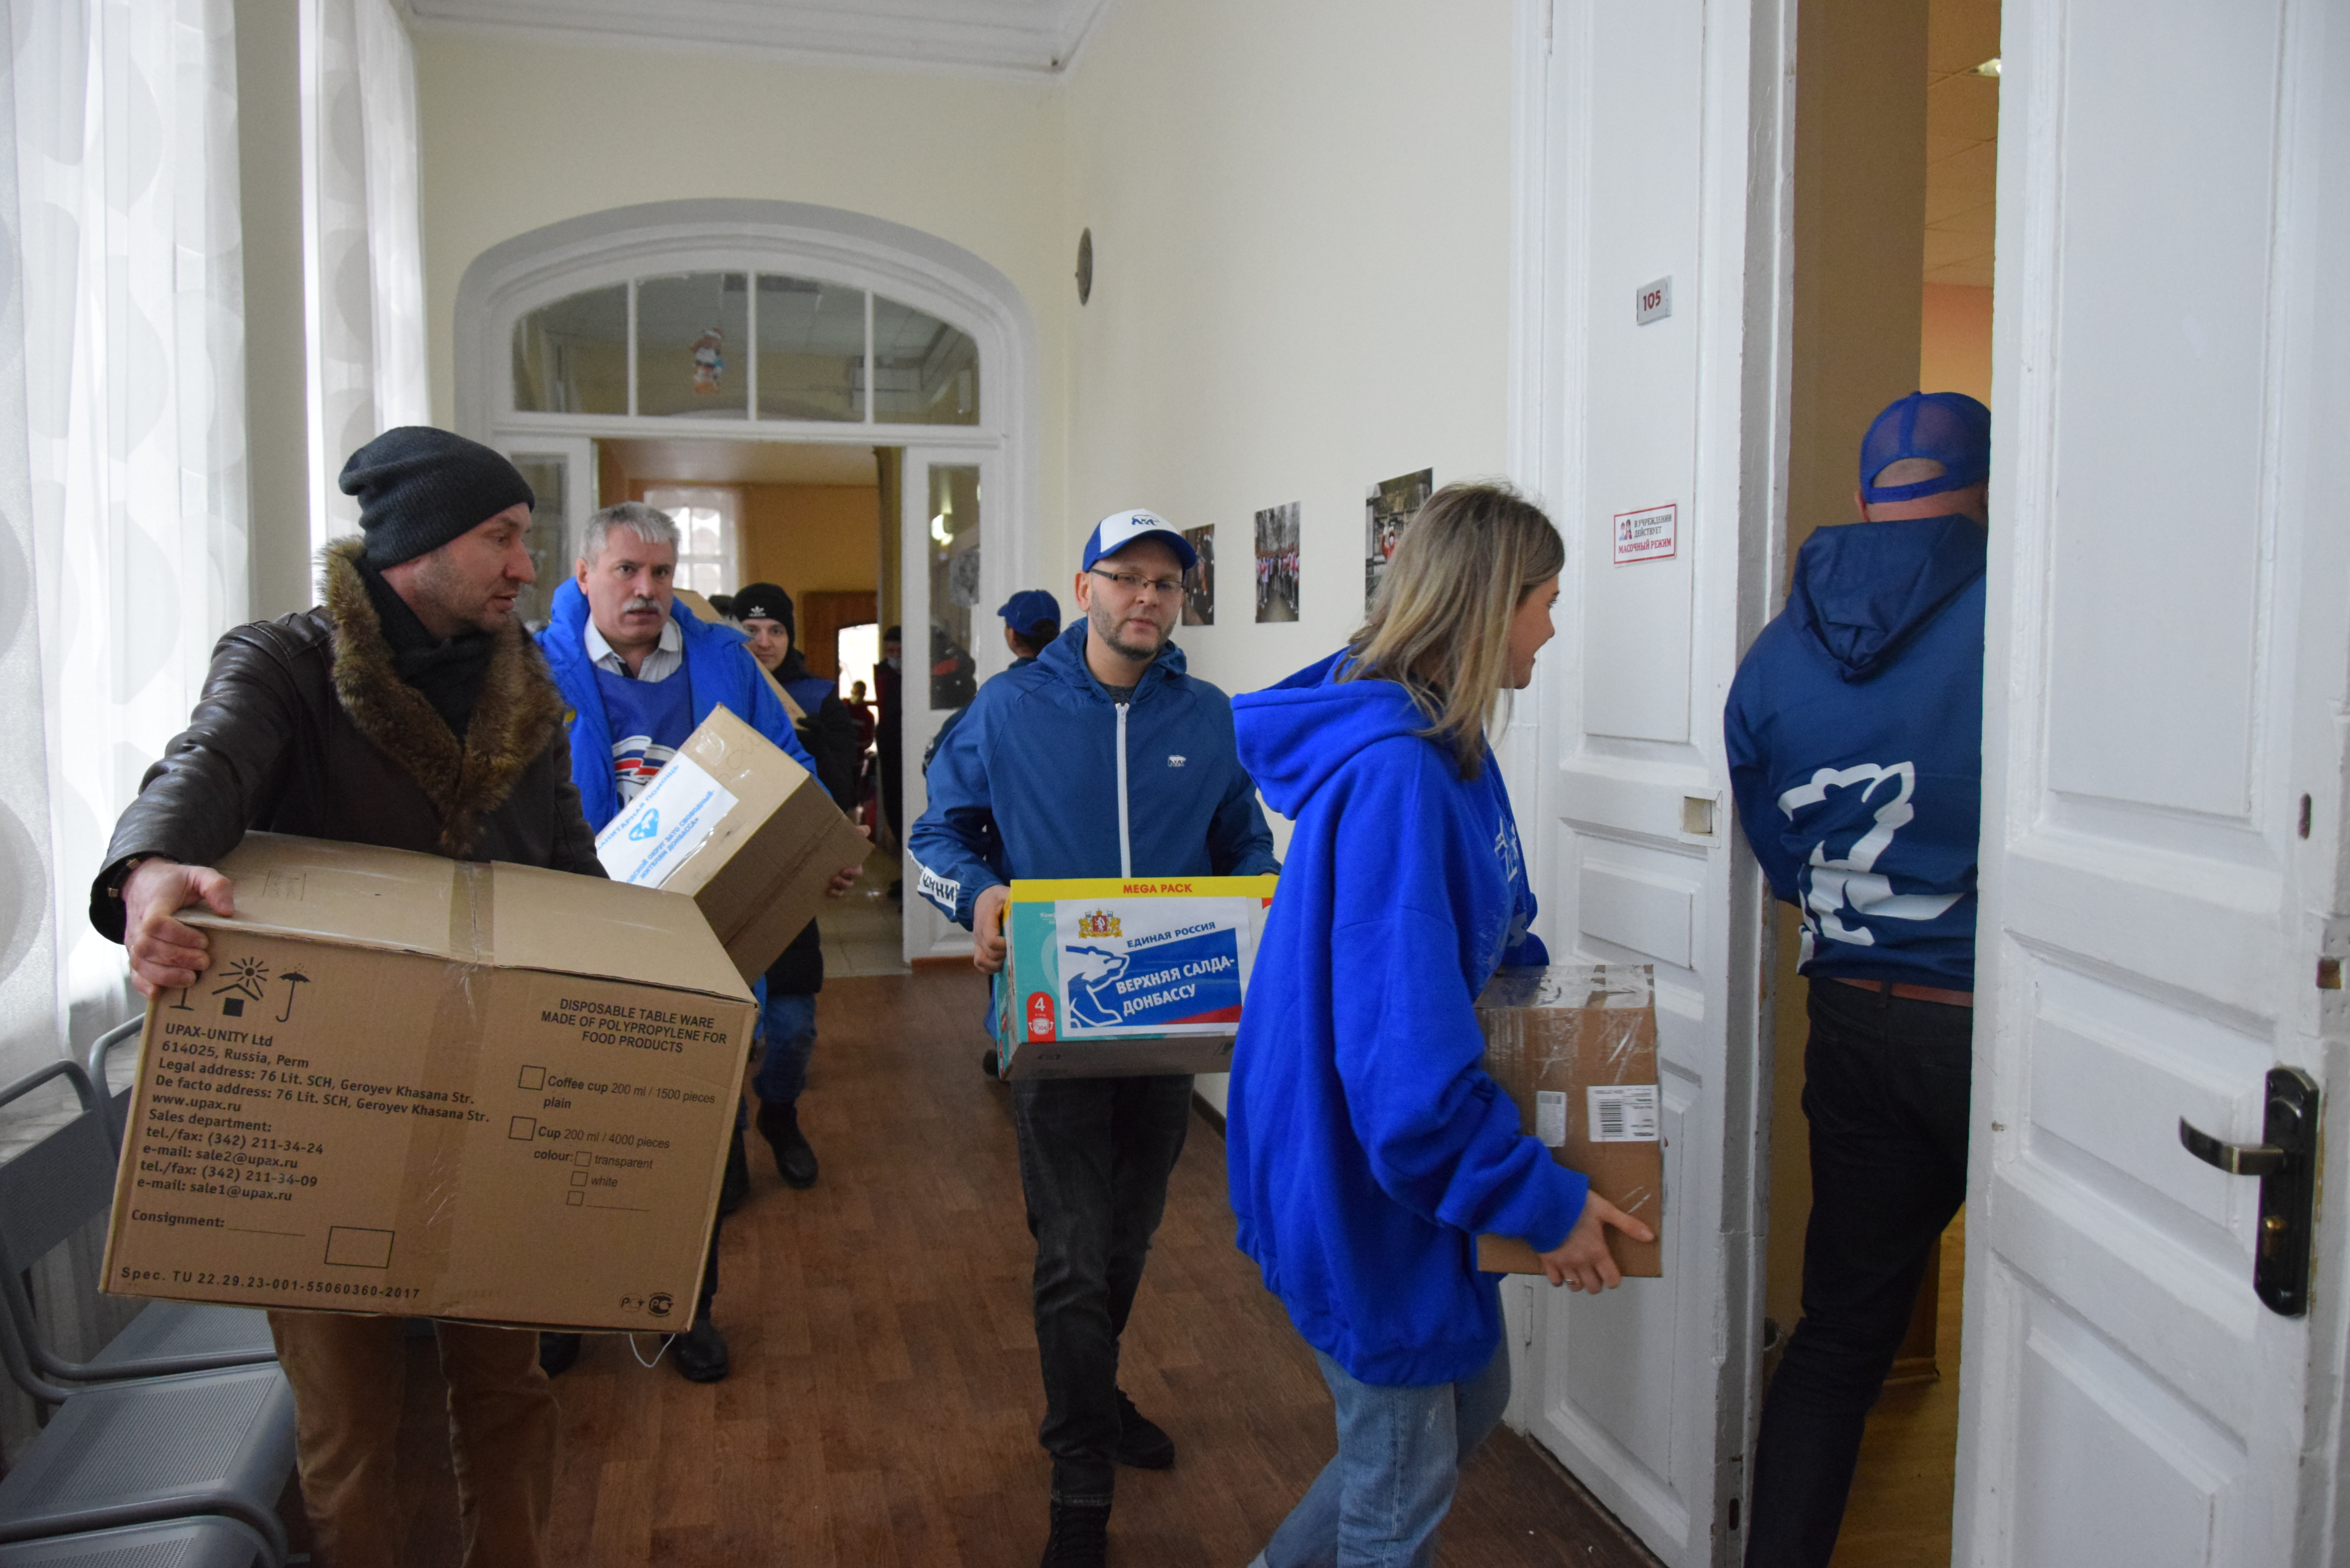 Гуманитарная помощь для эвакуированных жителей Донбасса. Екатеринбург